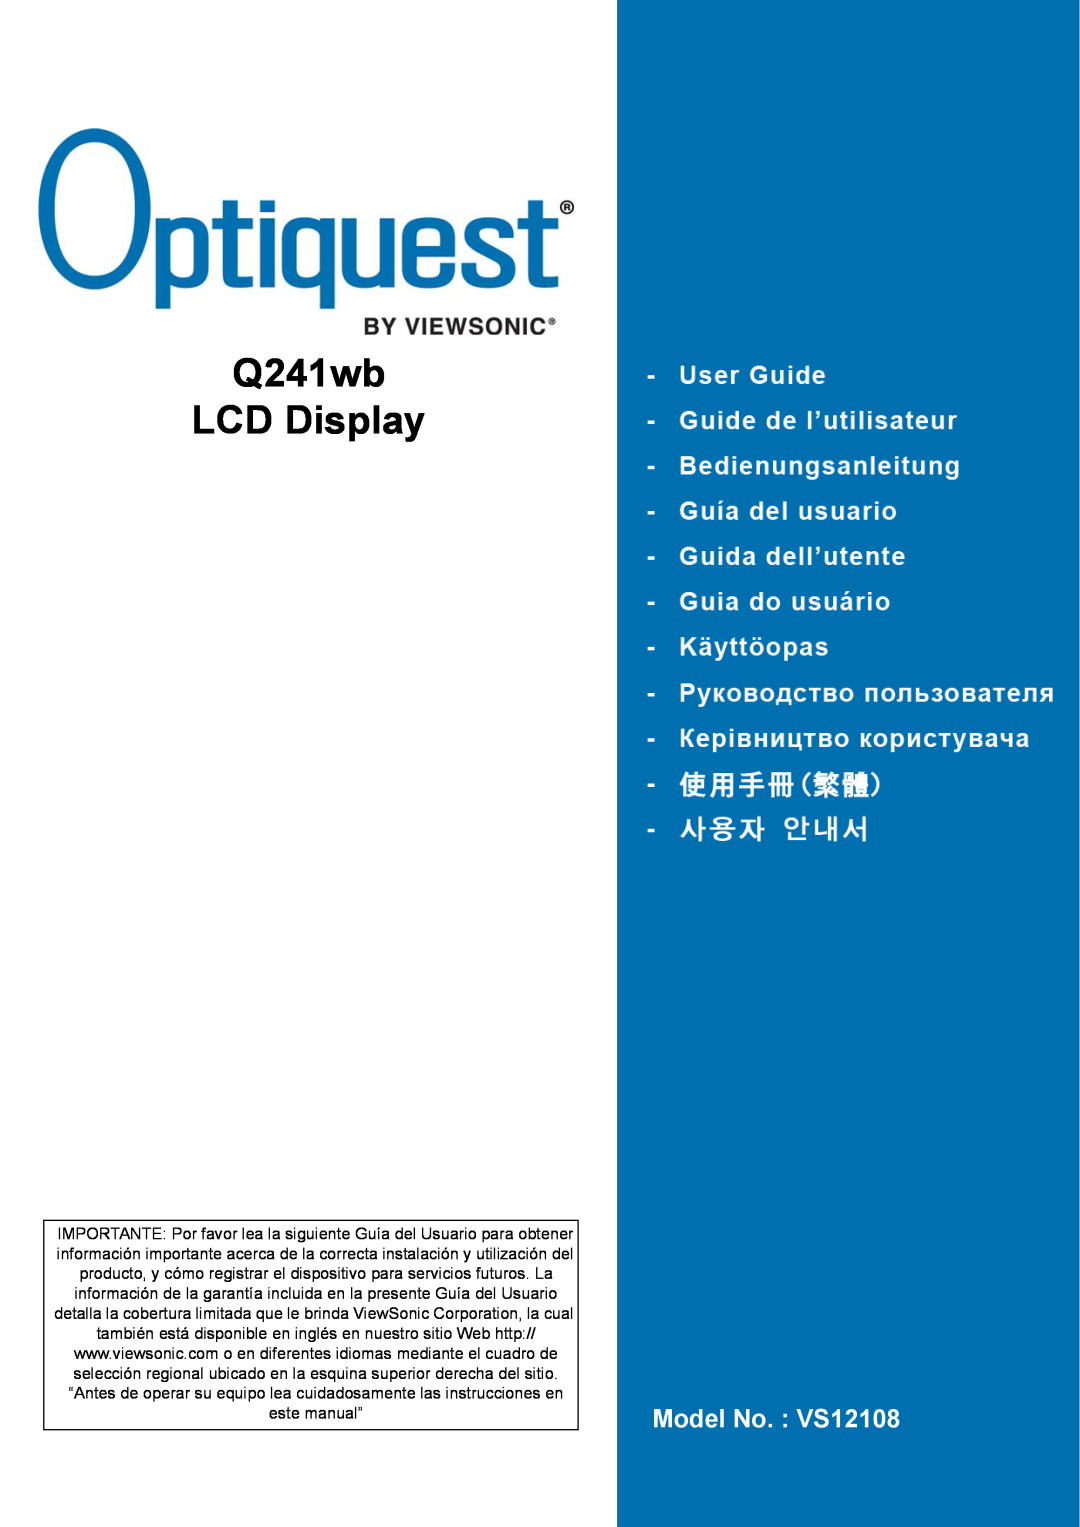 Optiquest manual Q241wb LCD Display, Model No. VS12108 